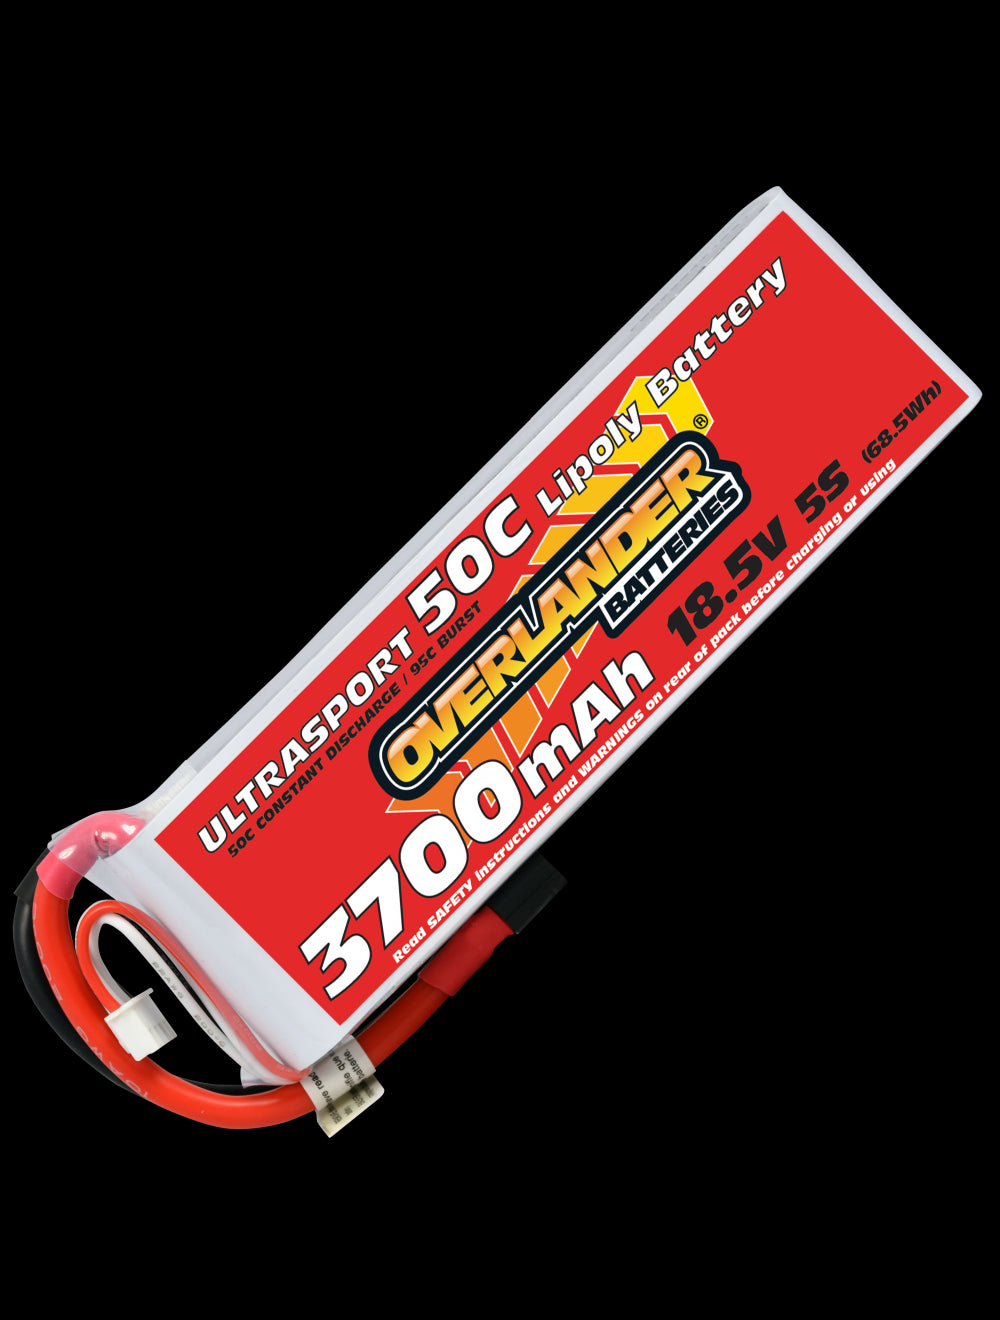 Overlander 3700mAh 18.5V 5S 50C Ultrasport LiPo Battery - EC5 Connector 3225